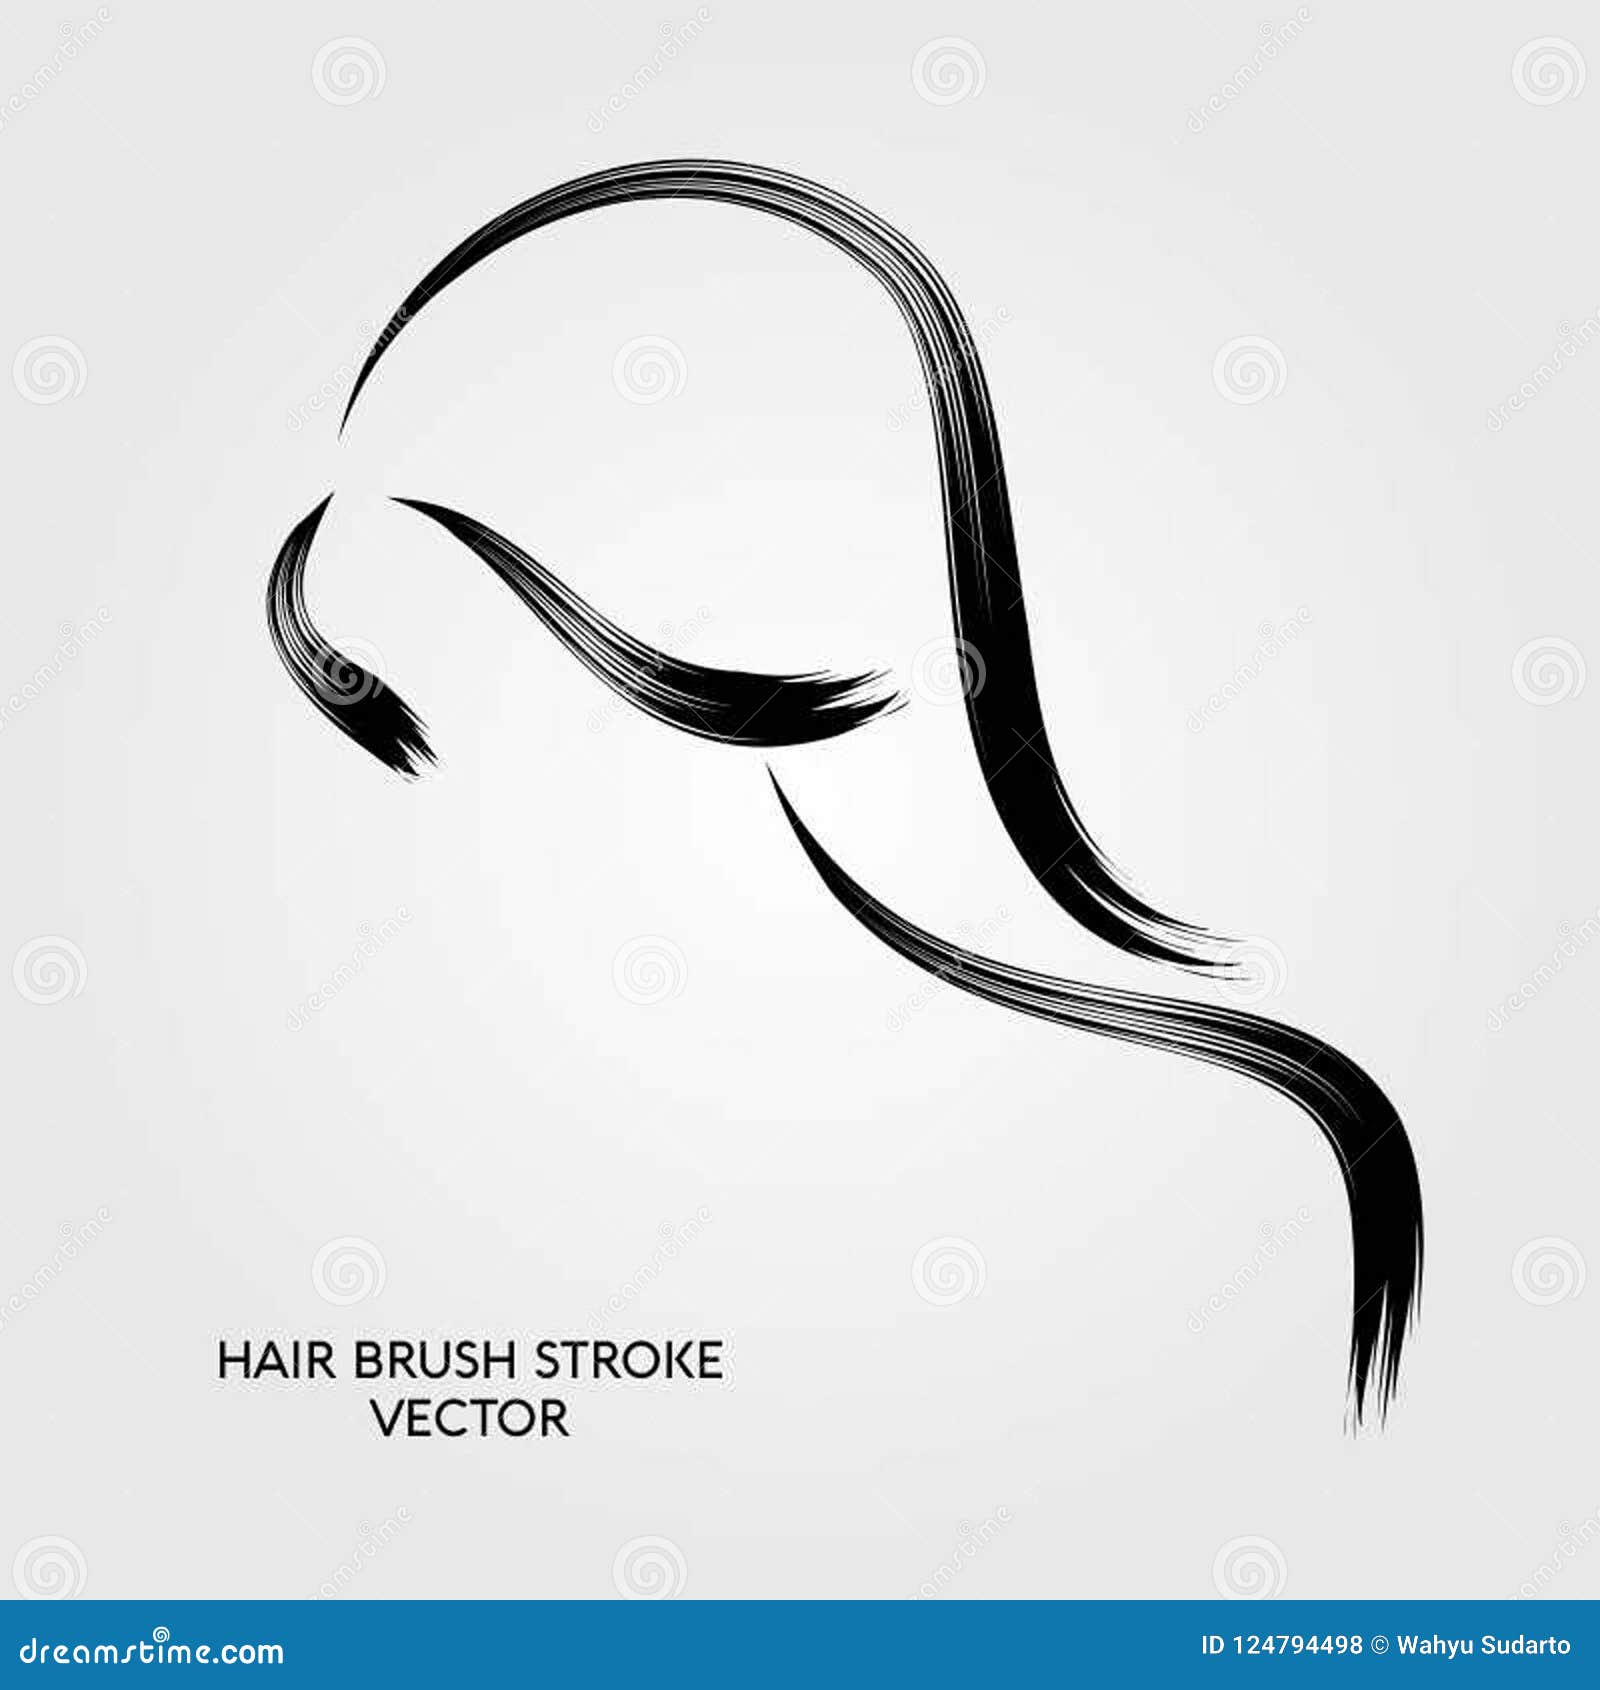 Line hair brush vector stock illustration. Illustration of business -  124794498